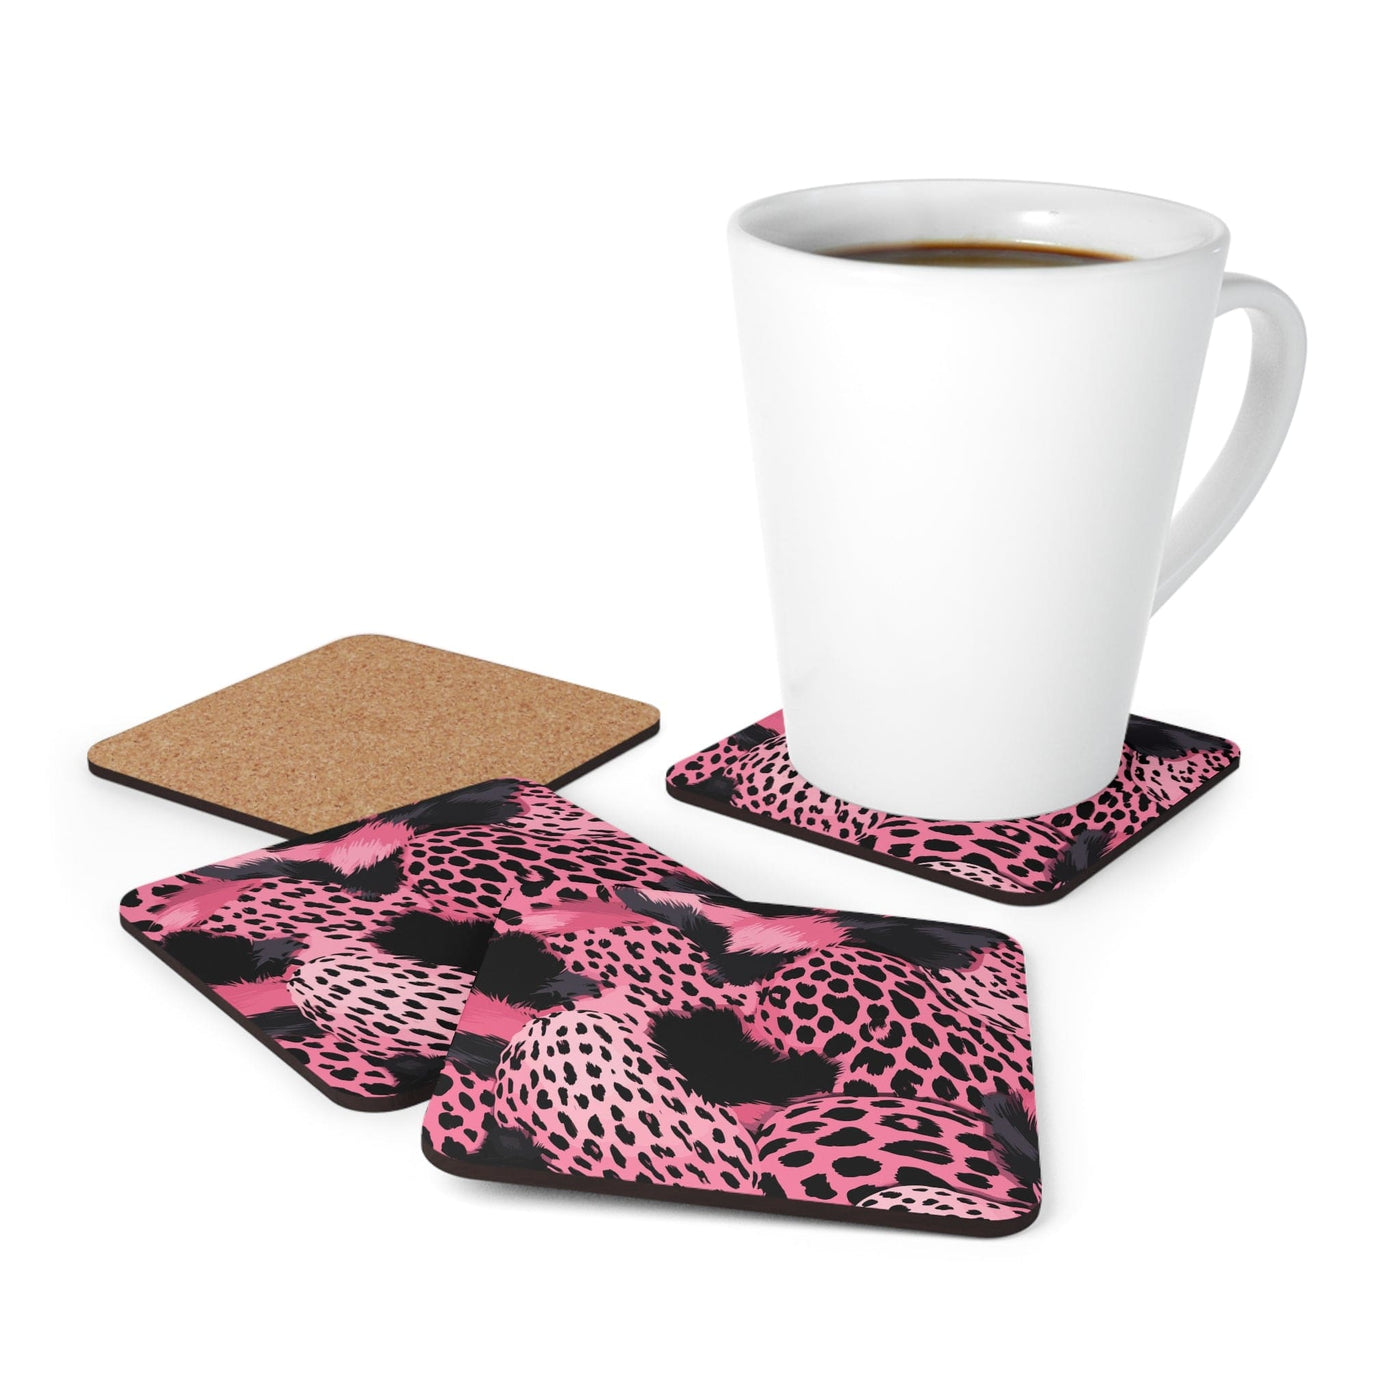 Coaster Set Of 4 For Drinks Pink And Black Leopard Spots Illustration